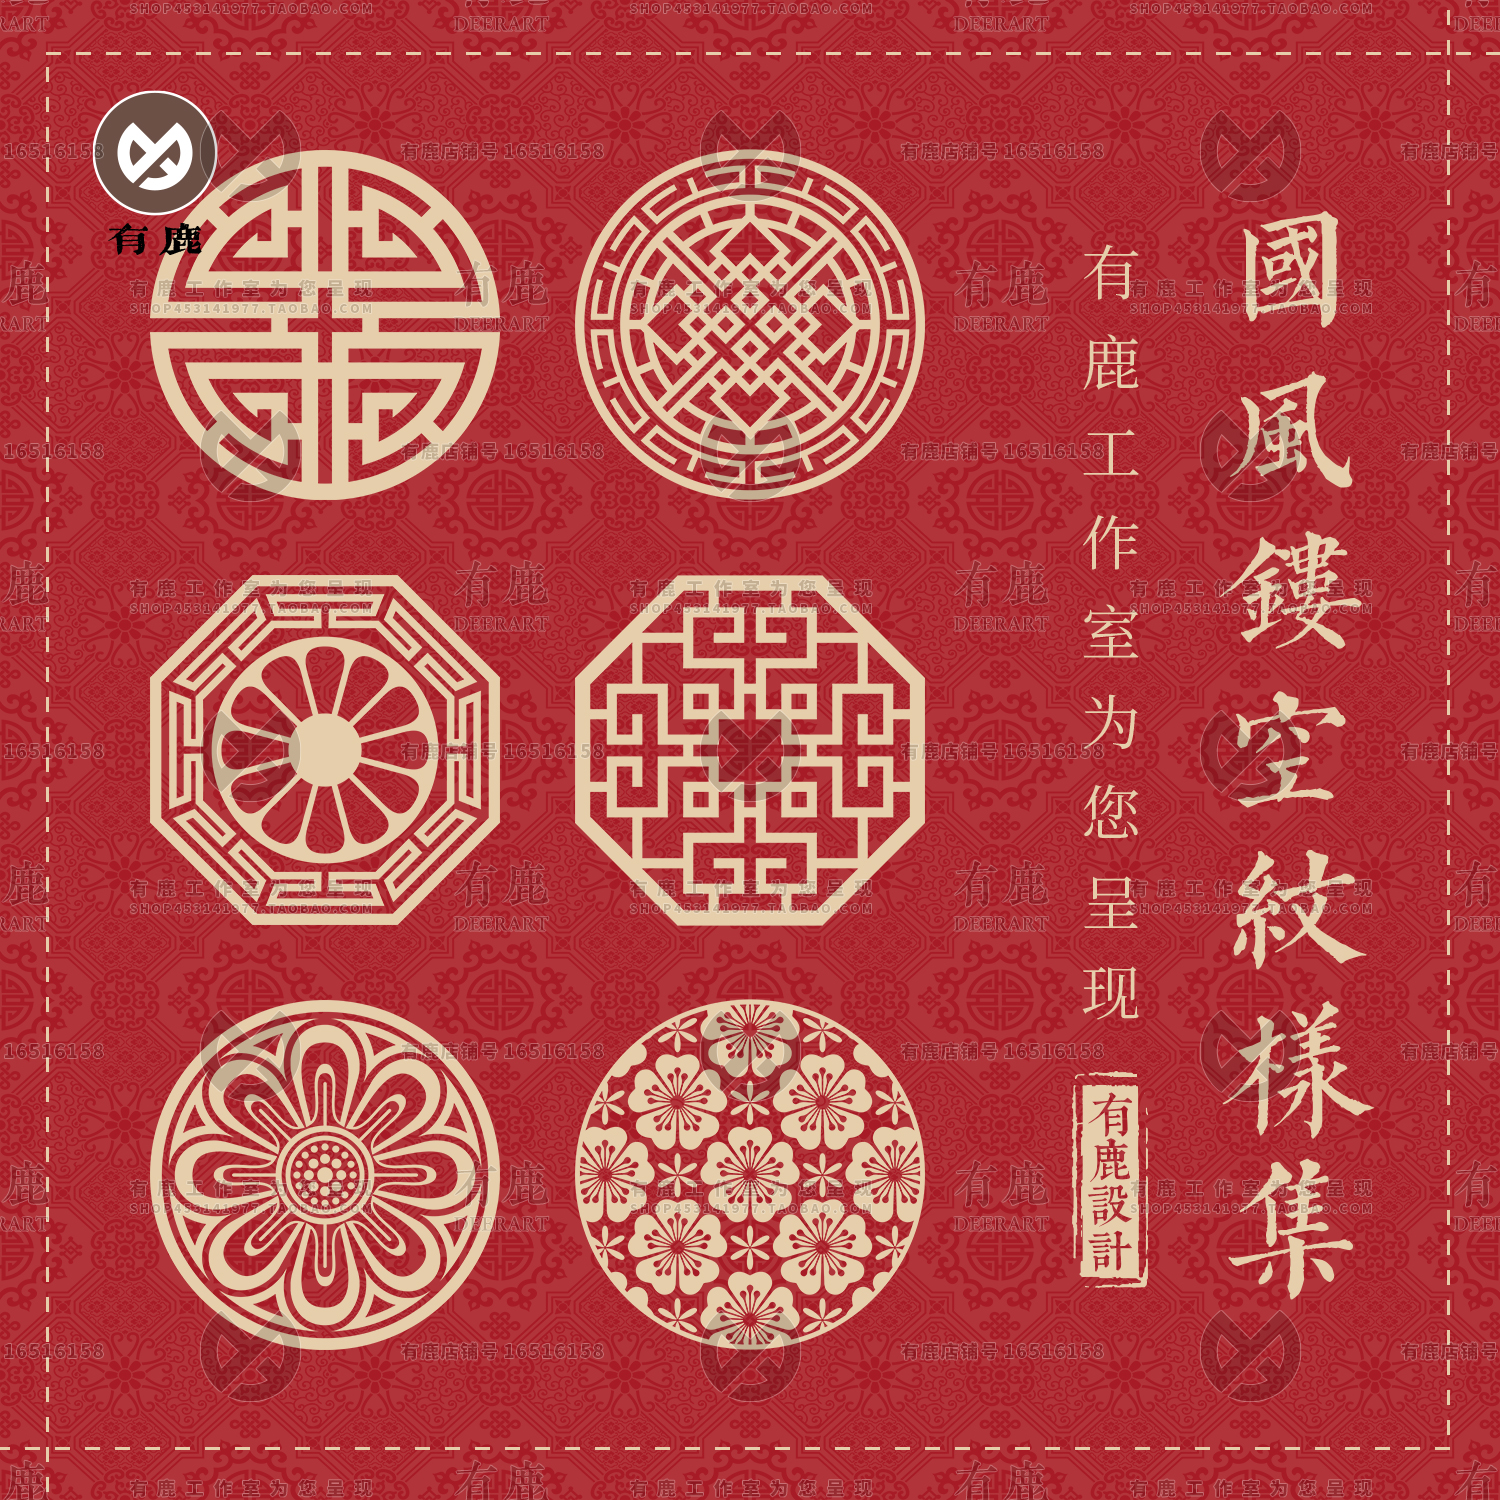 中式古典镂空图案窗花纹样剪纸辅助图形矢量素材装饰图标月饼模板